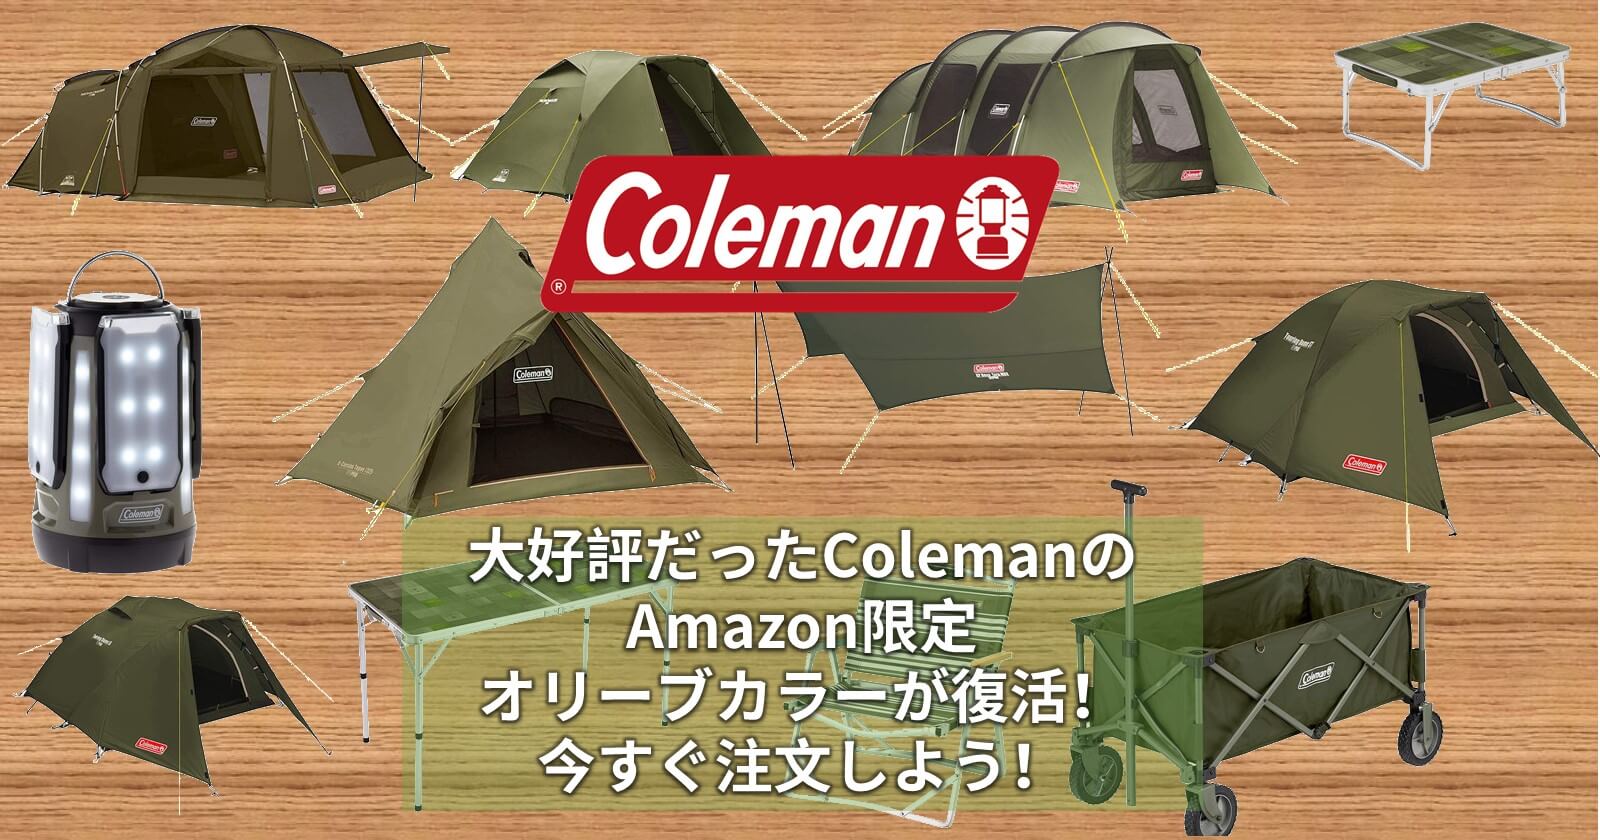 ツーリングドームLX Amazon限定カラー オリーブ コールマン-